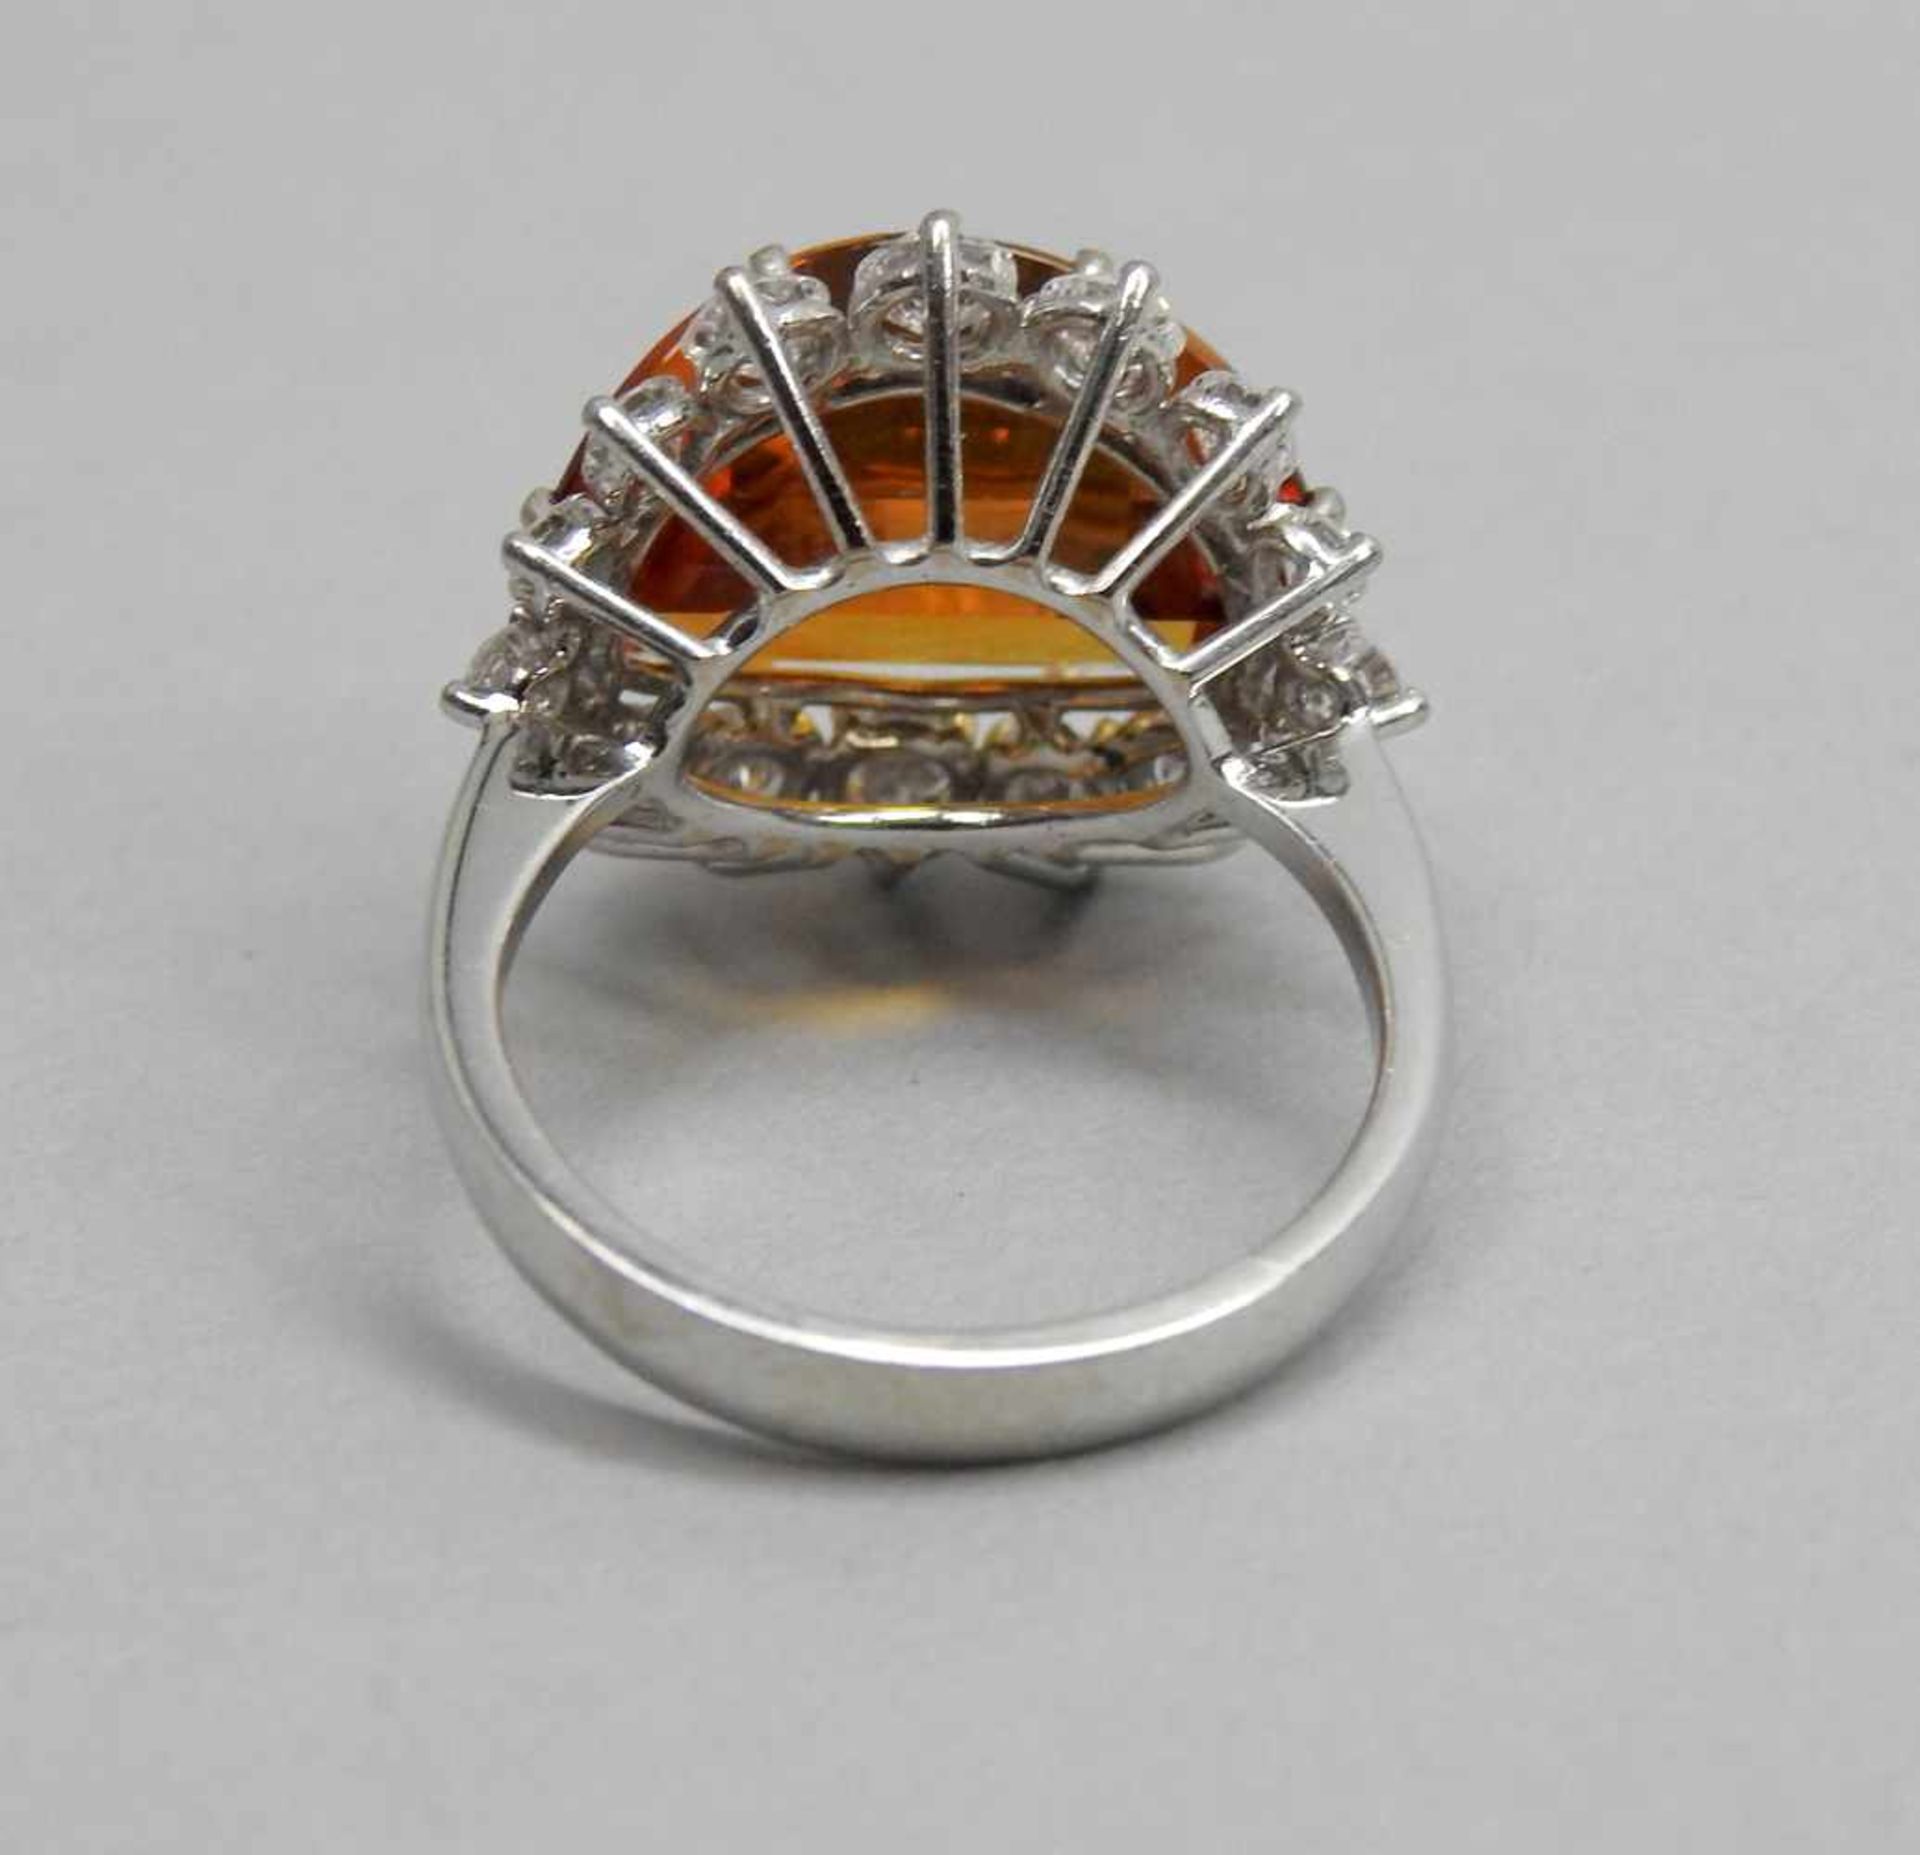 Großer Citrin-Diamant-Ring18 K. Weißgold mit großem Citrin, ca. 5 ct und Diamanten, ca. 1 ct. - Bild 3 aus 3